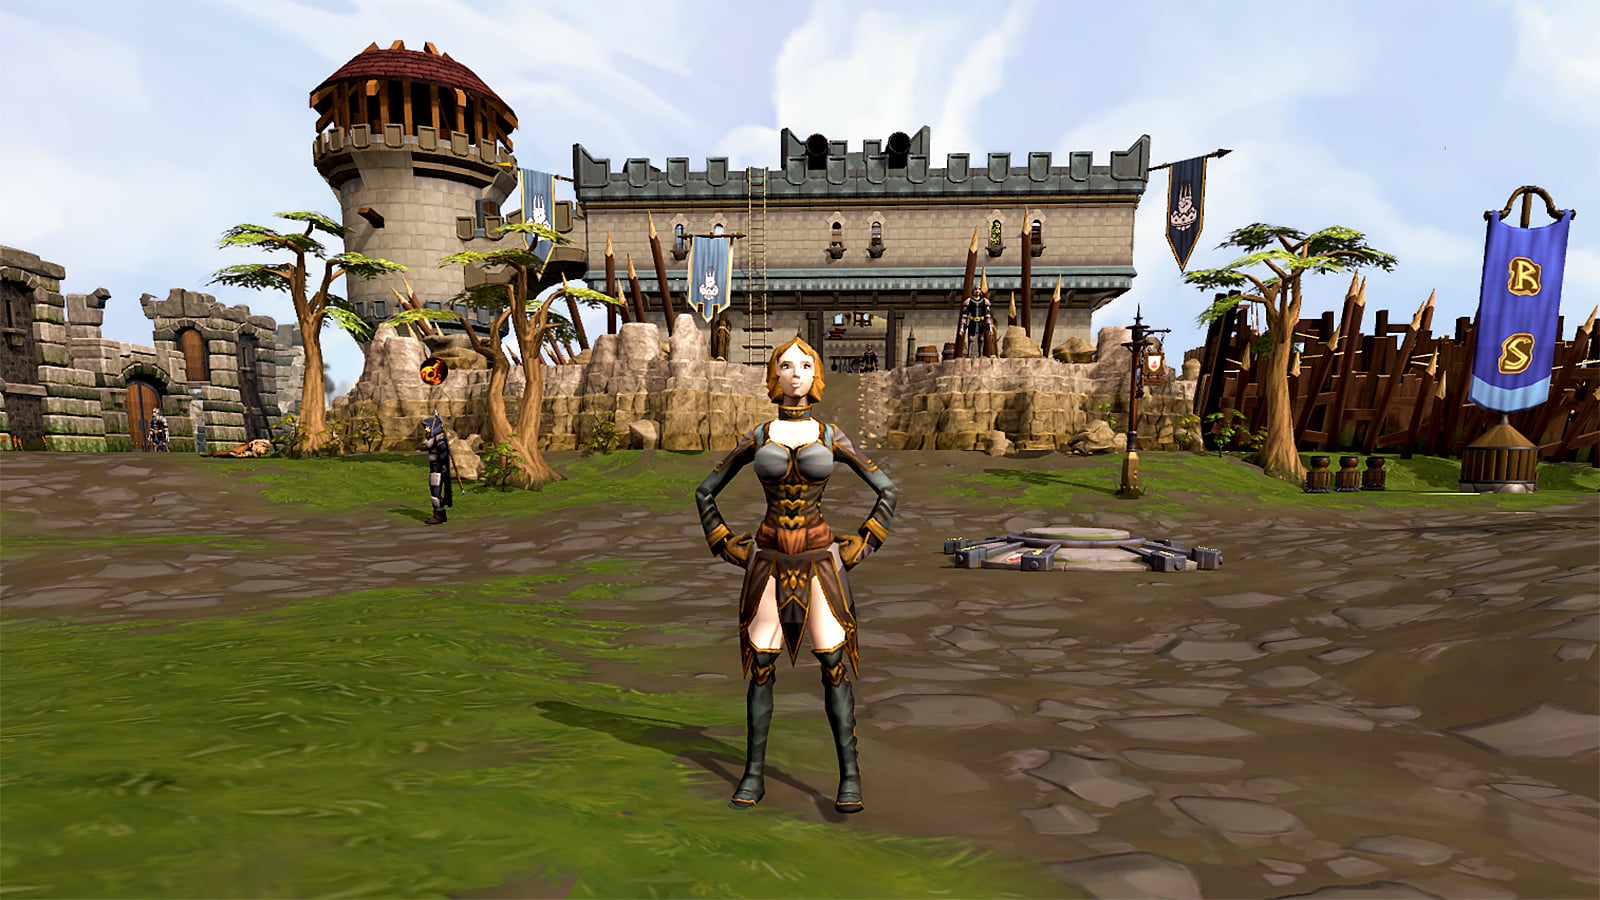 Một nhân vật người chơi tạo dáng bởi một địa danh lâu đài trong MMORPG miễn phí, Runescape